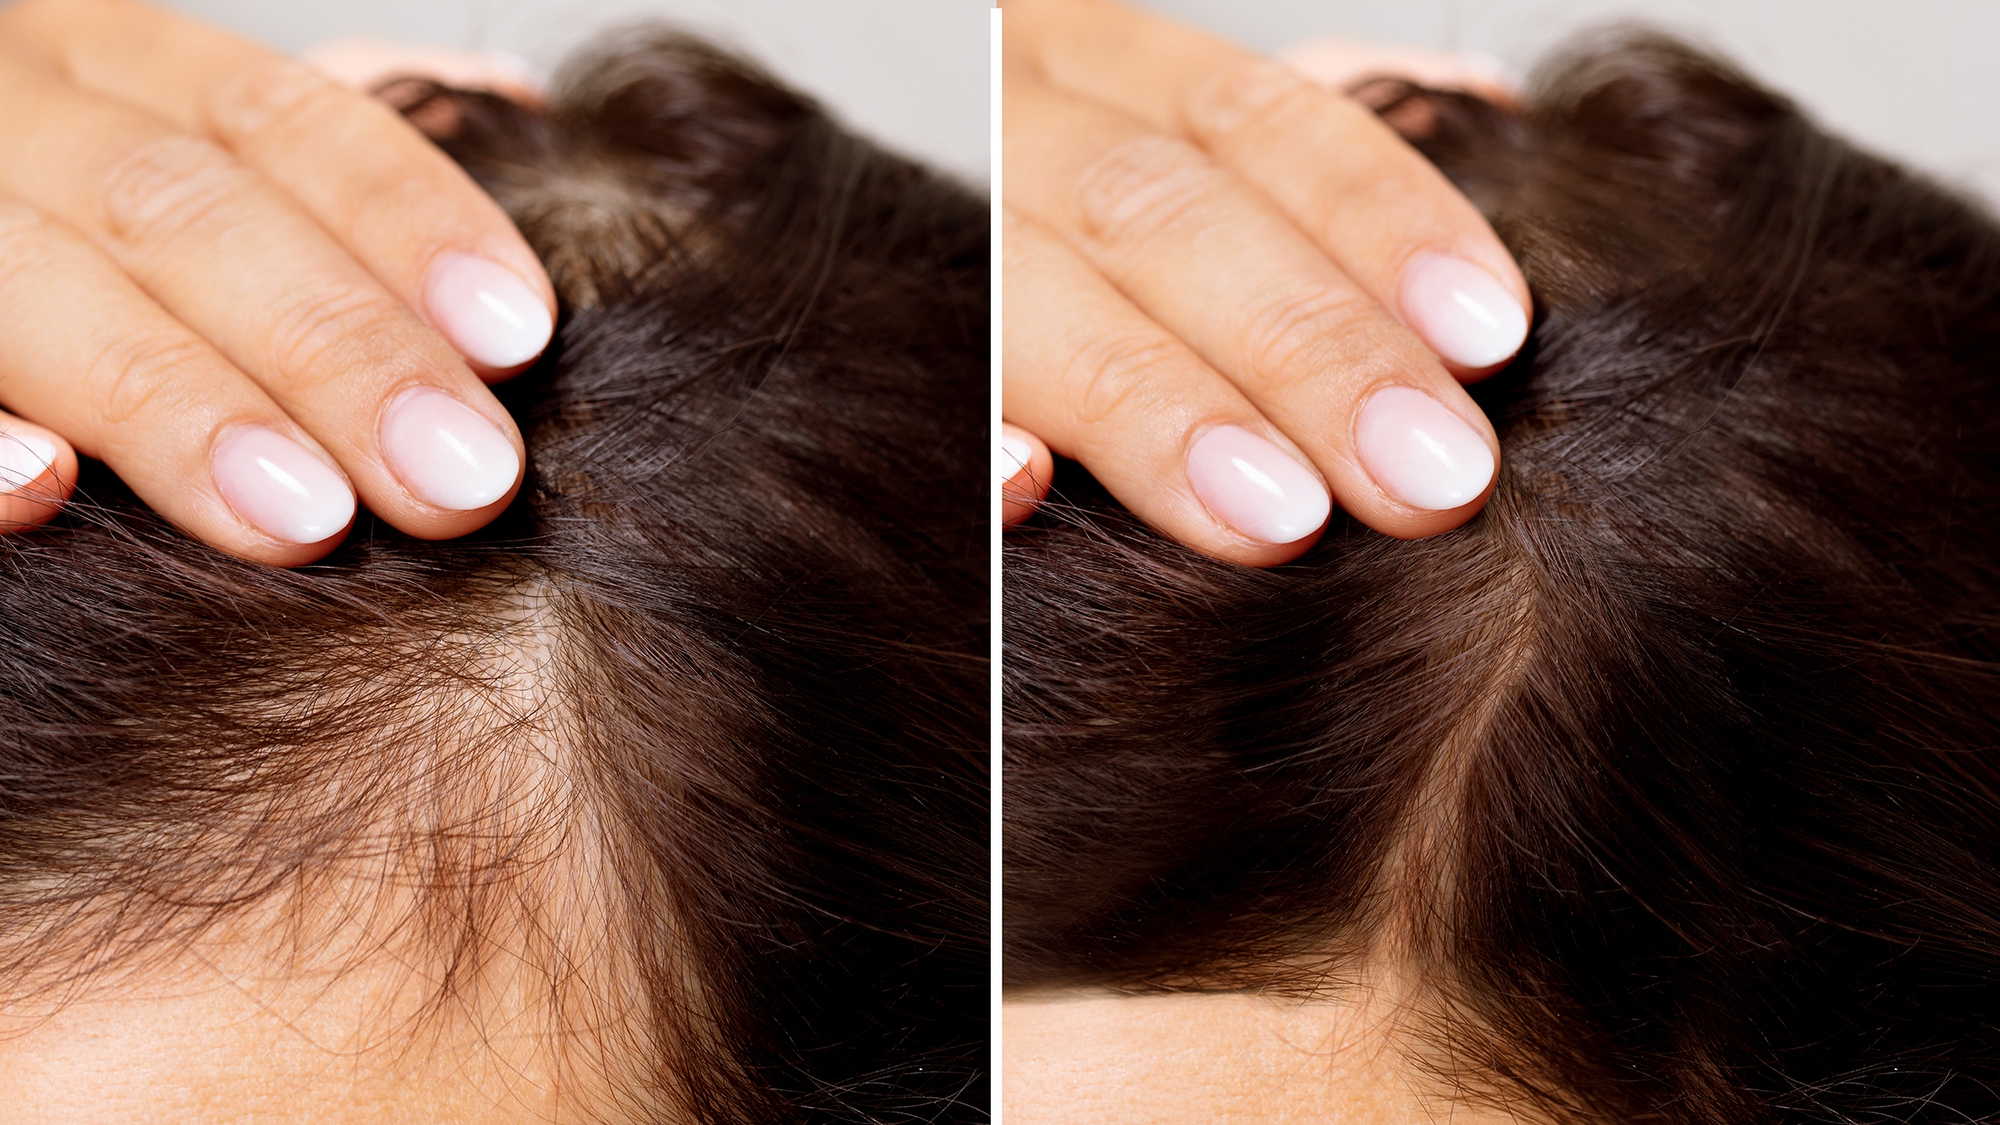 Rụng tóc Telogen là gì? Dấu hiệu, nguyên nhân & hướng khắc phục | Rungtoc.vn